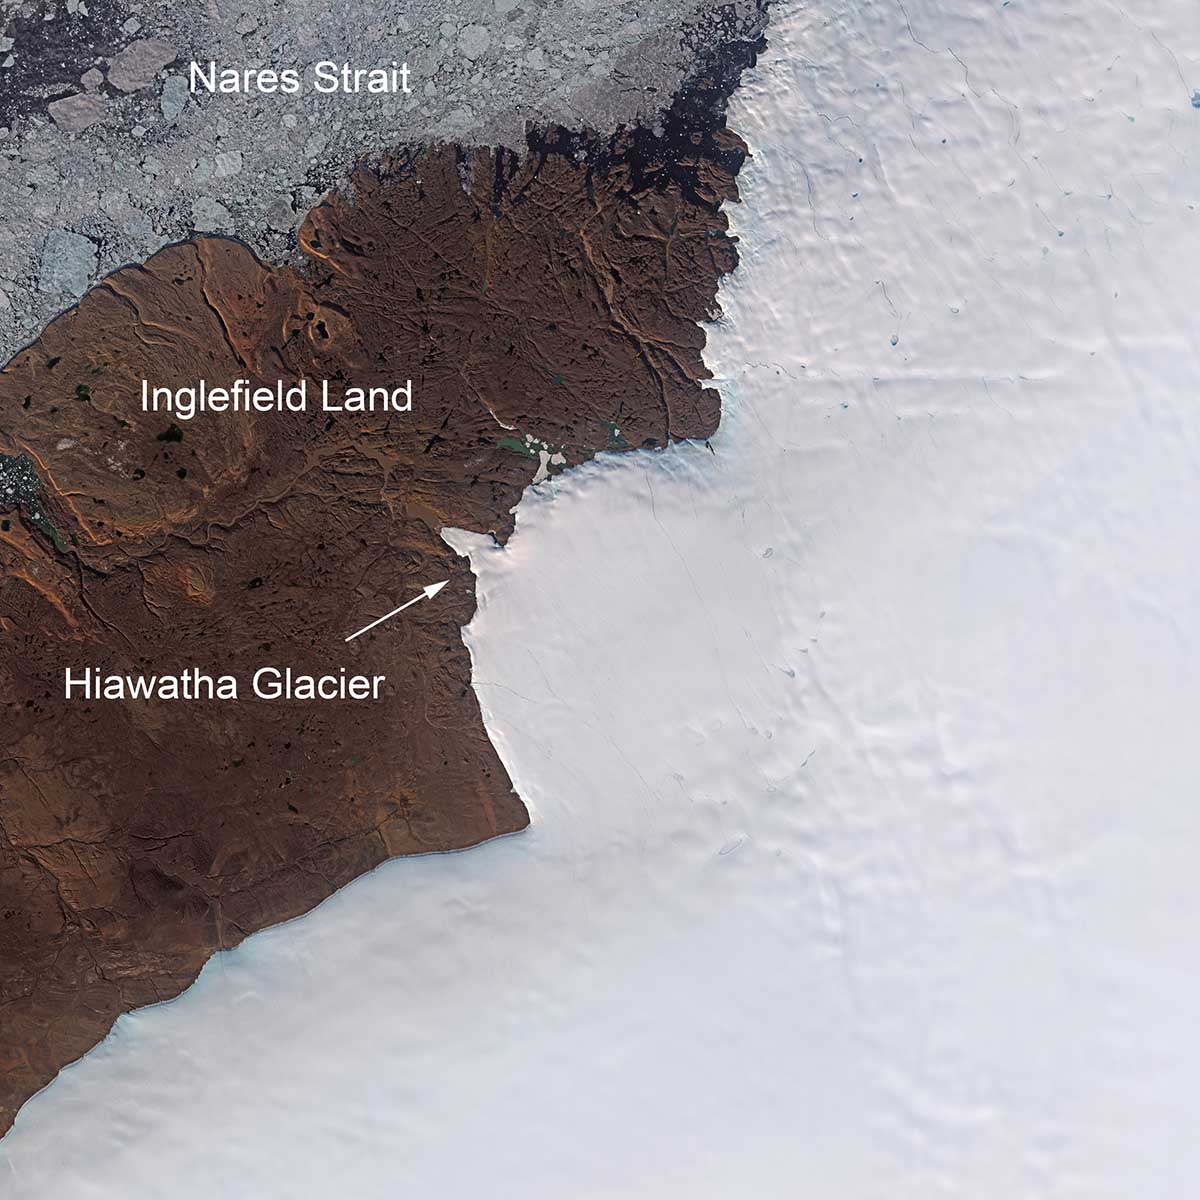 in-greenland-hyawatha-glacier-hide-impact-crater-esa